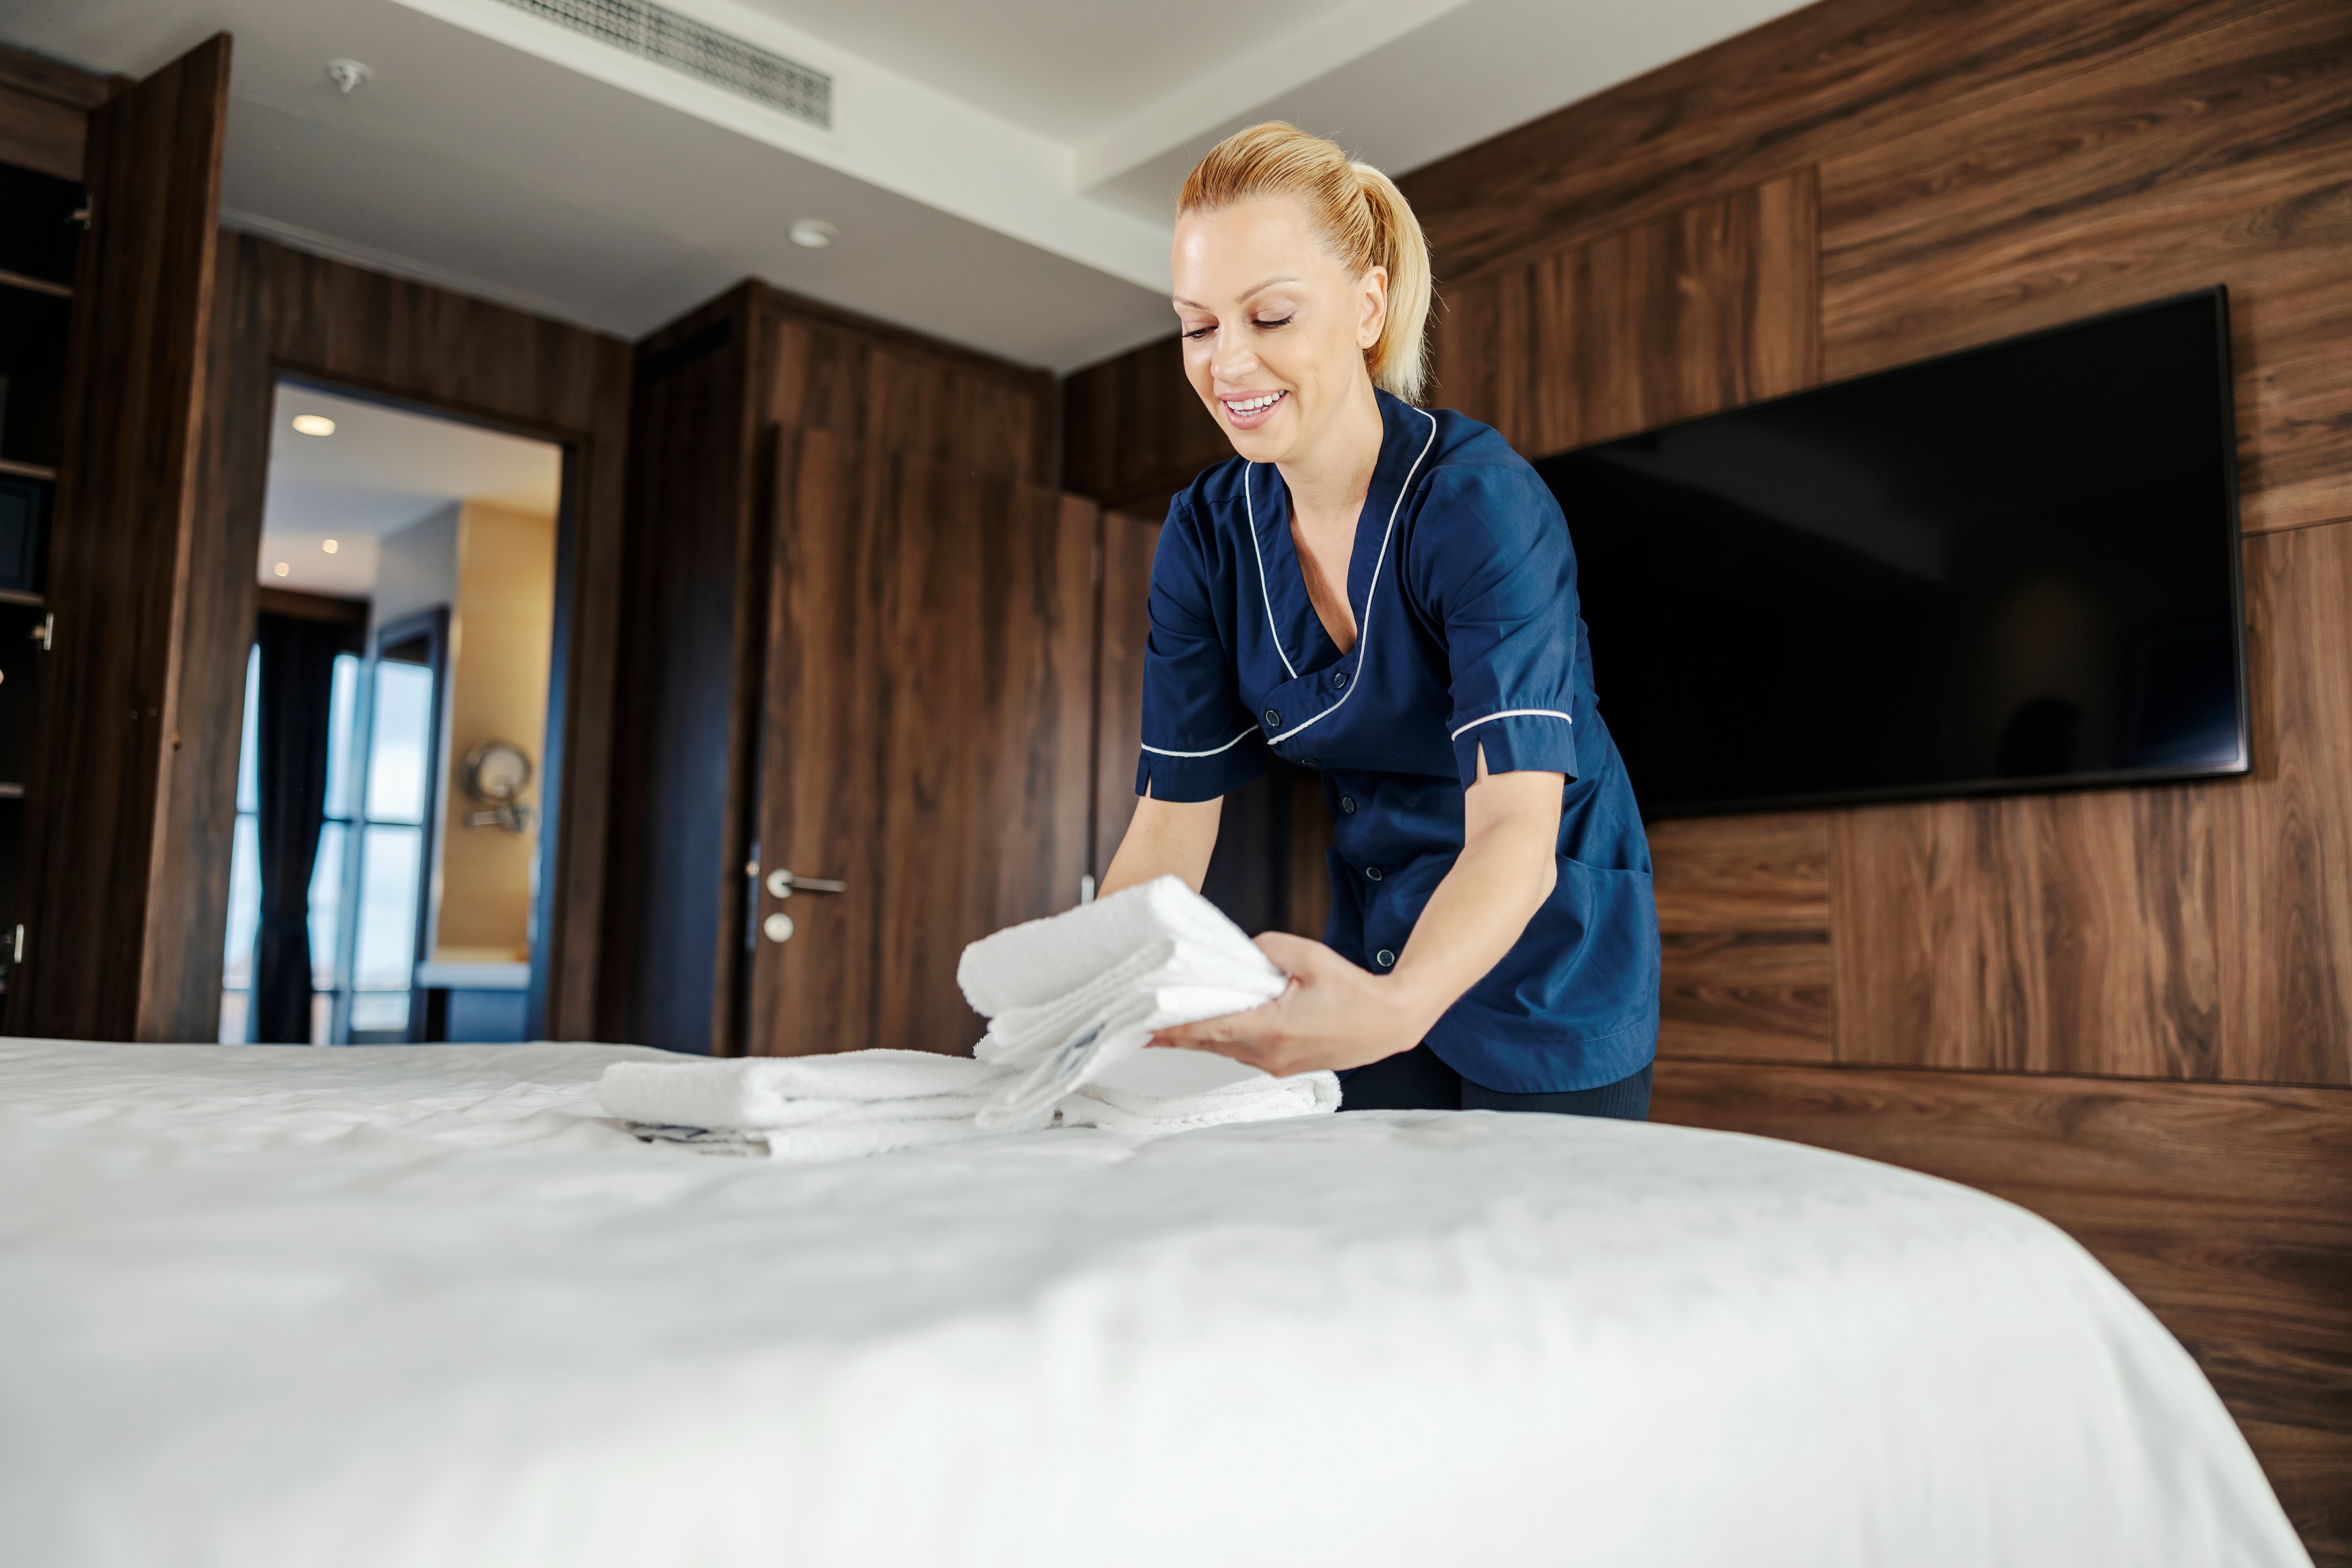 Une employée met des serviettes propres sur un lit dans une chambre d'hôtel | Source : Shutterstock